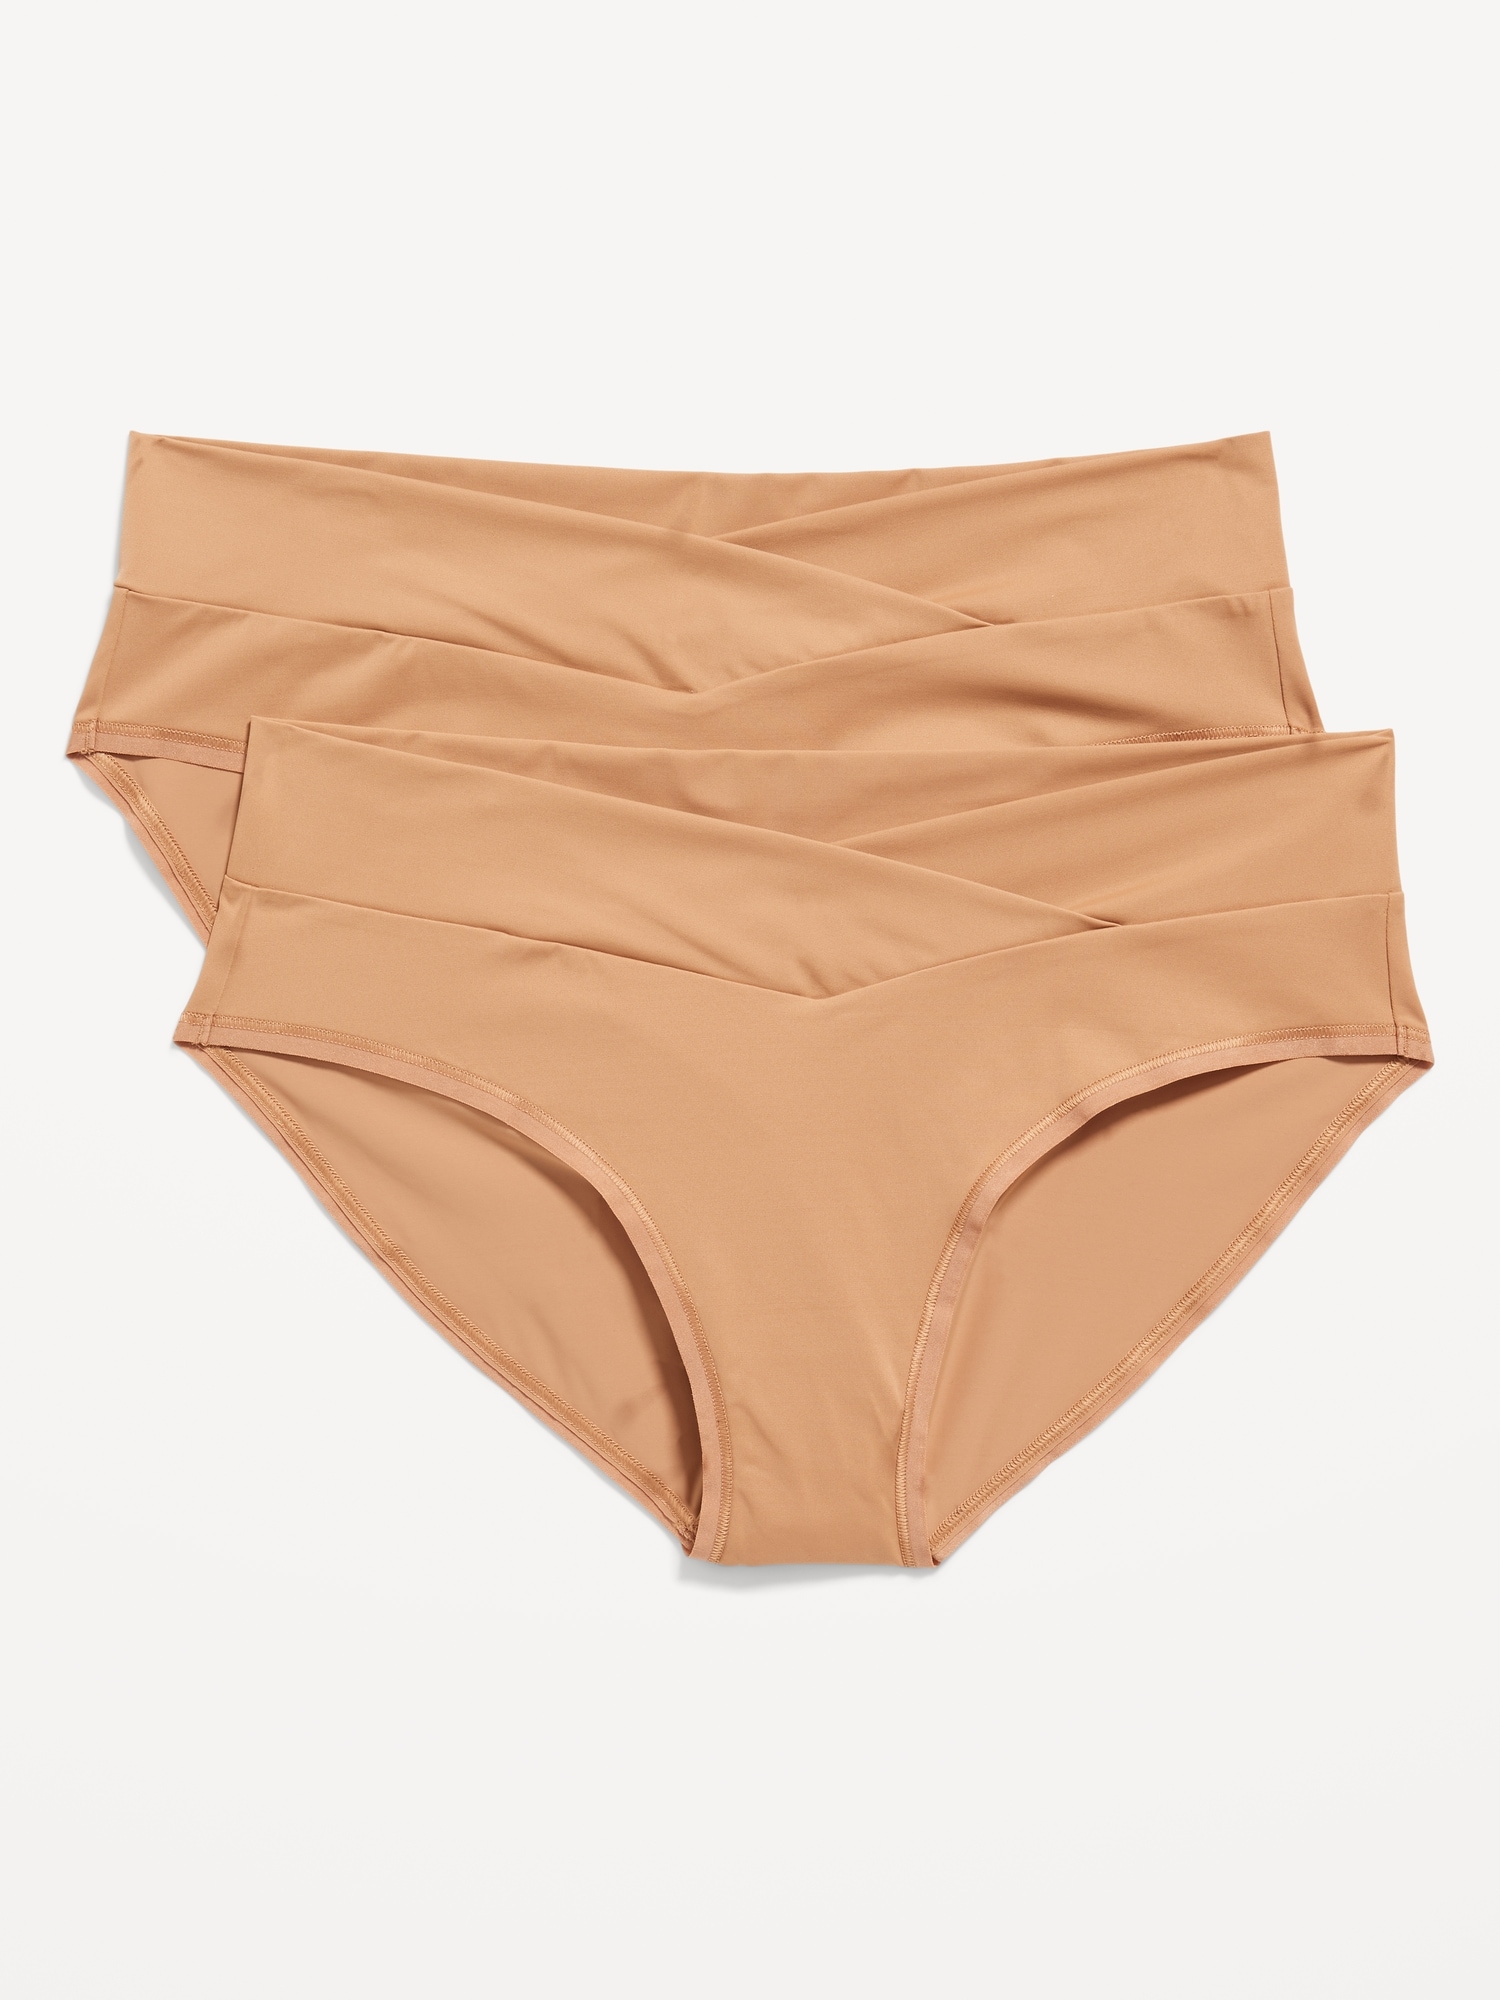 Size Medium Vintage Y2K Underwear Ladies Unused Polyester/ Acetate Knickers  Nude Beige Latvia Knickers 1985 -  Israel